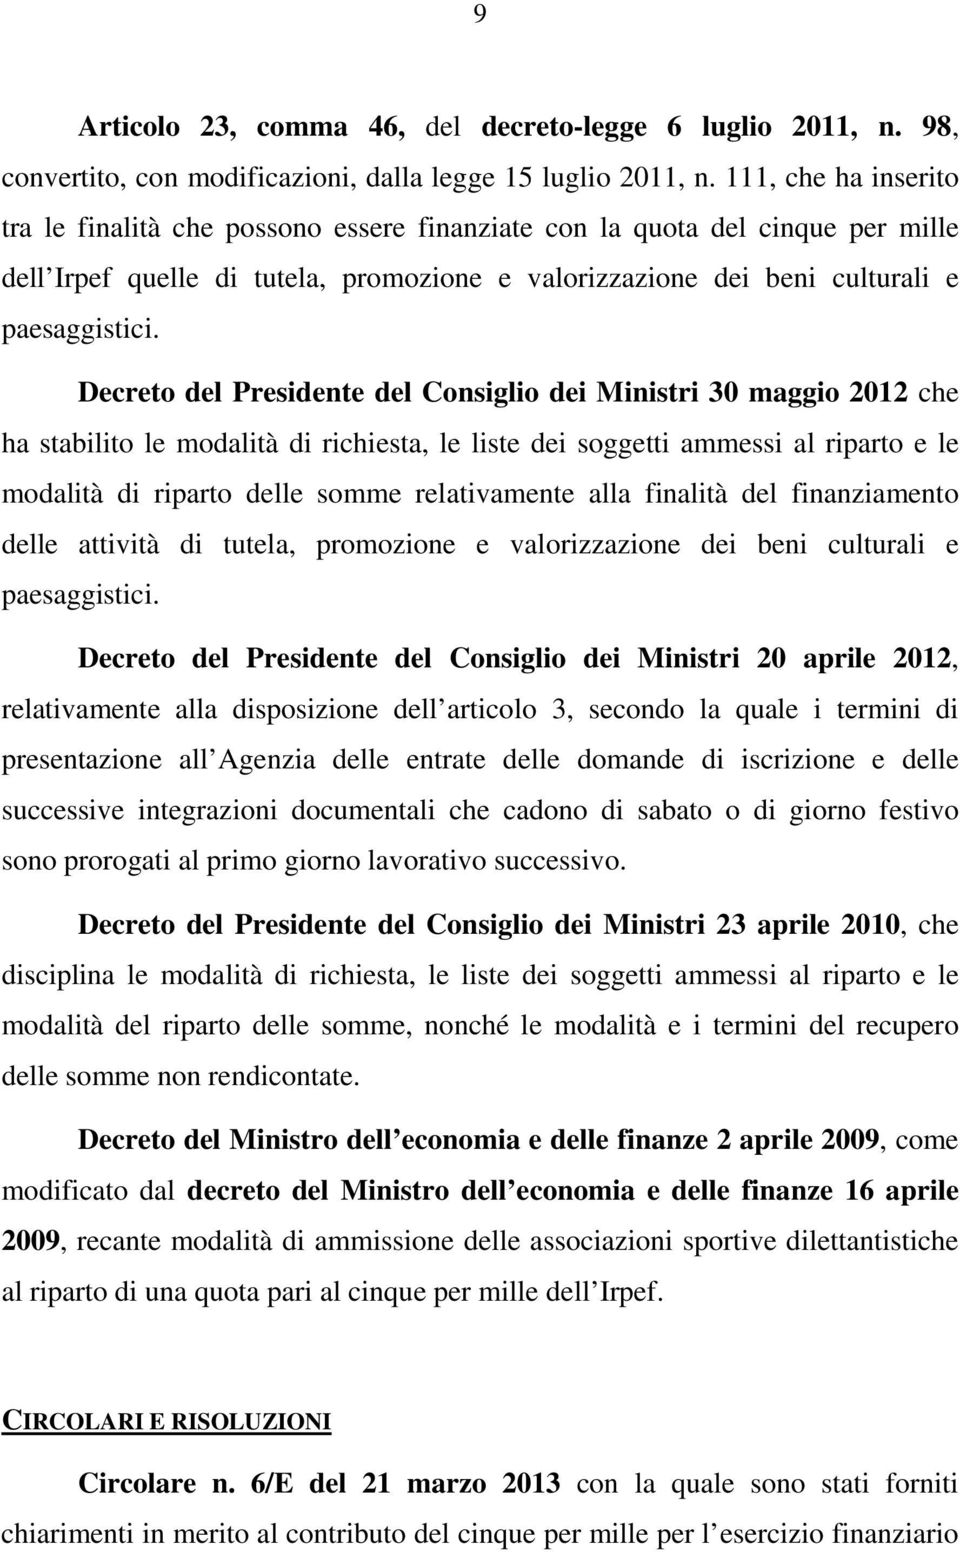 Decreto del Presidente del Consiglio dei Ministri 30 maggio 2012 che ha stabilito le modalità di richiesta, le liste dei soggetti ammessi al riparto e le modalità di riparto delle somme relativamente